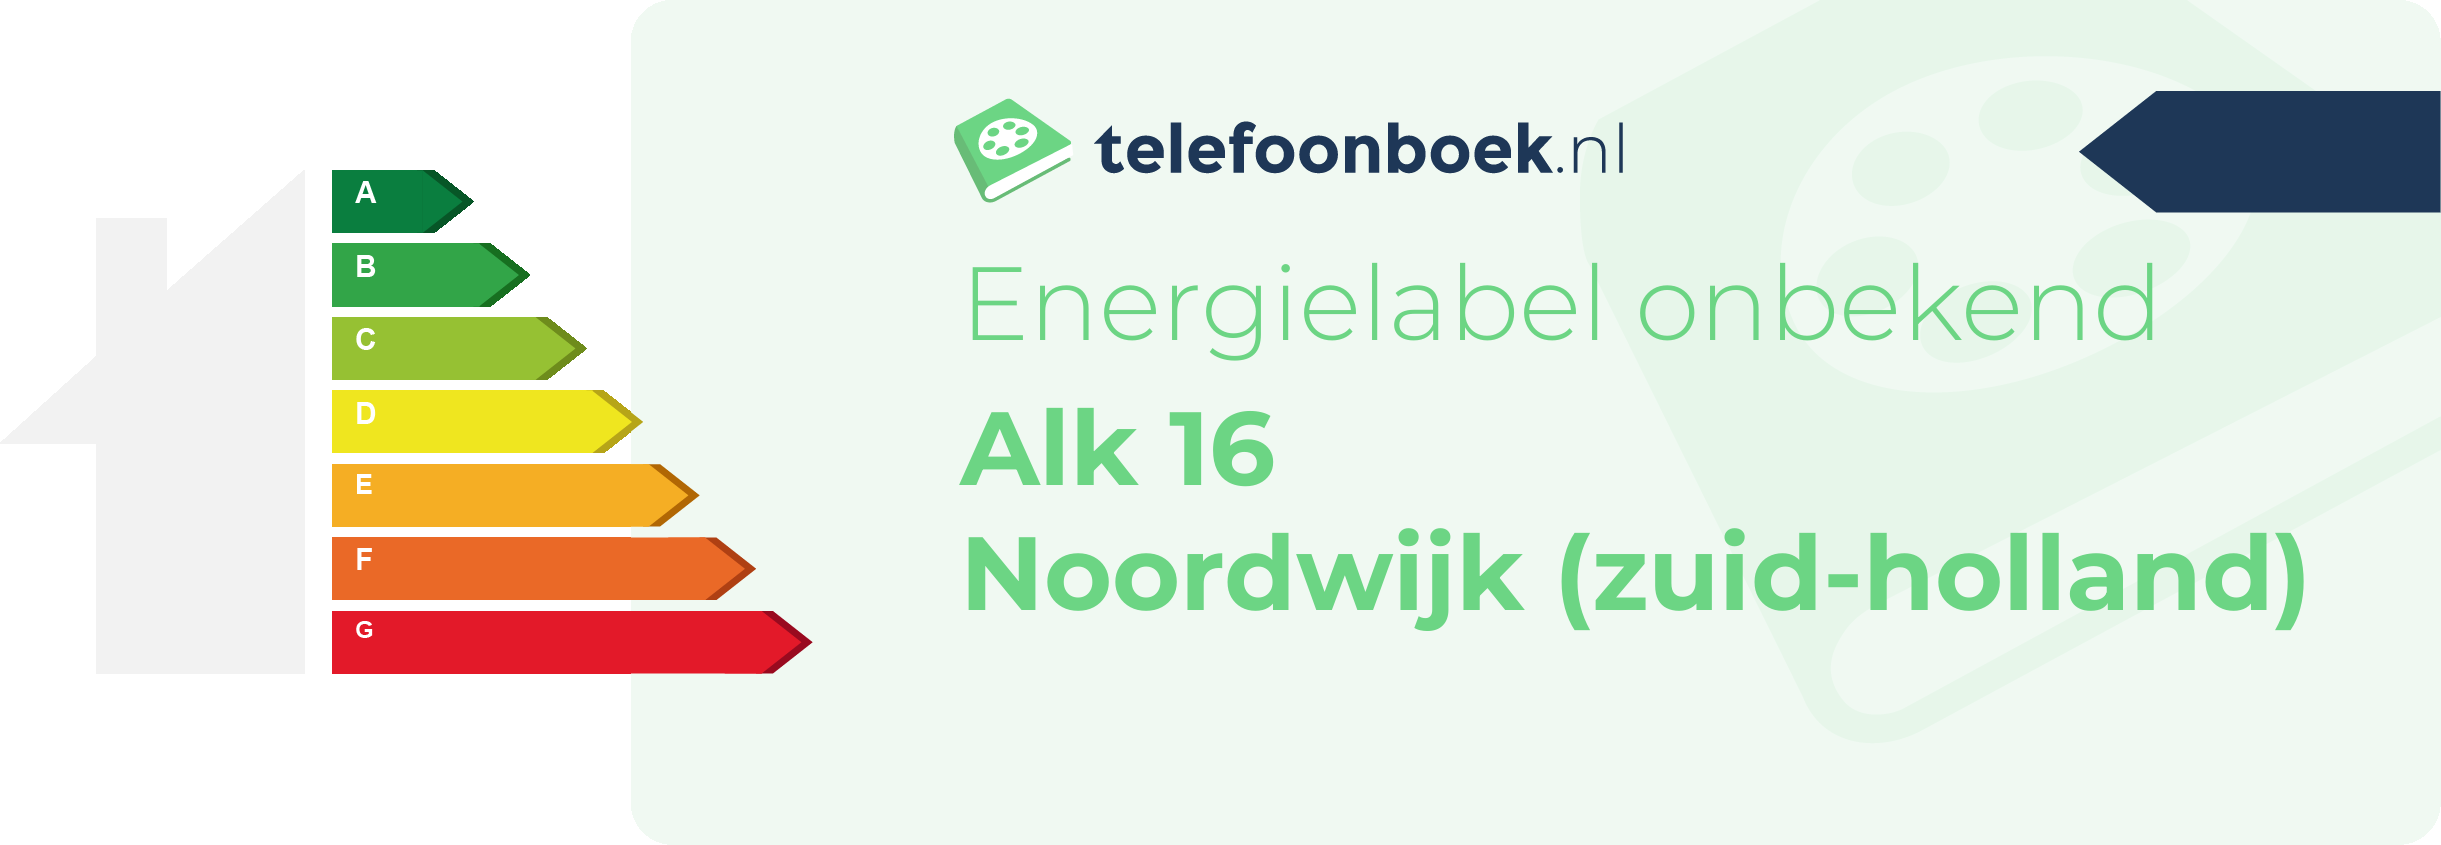 Energielabel Alk 16 Noordwijk (Zuid-Holland)